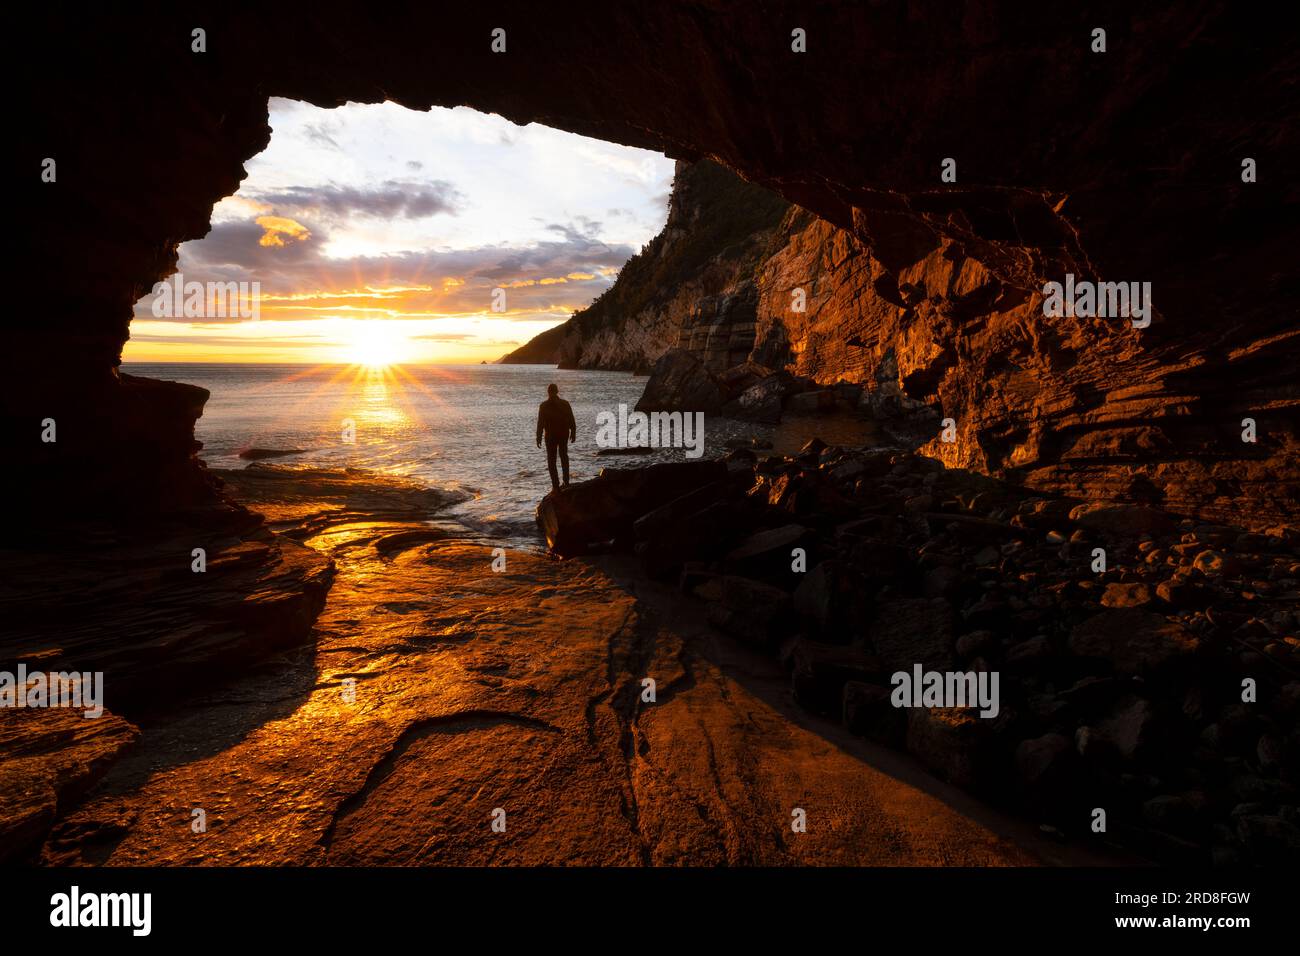 Un garçon admire un beau coucher de soleil printanier de la grotte Byron, Portovenere, province de la Spezia, district de Ligurie, Italie, Europe Banque D'Images